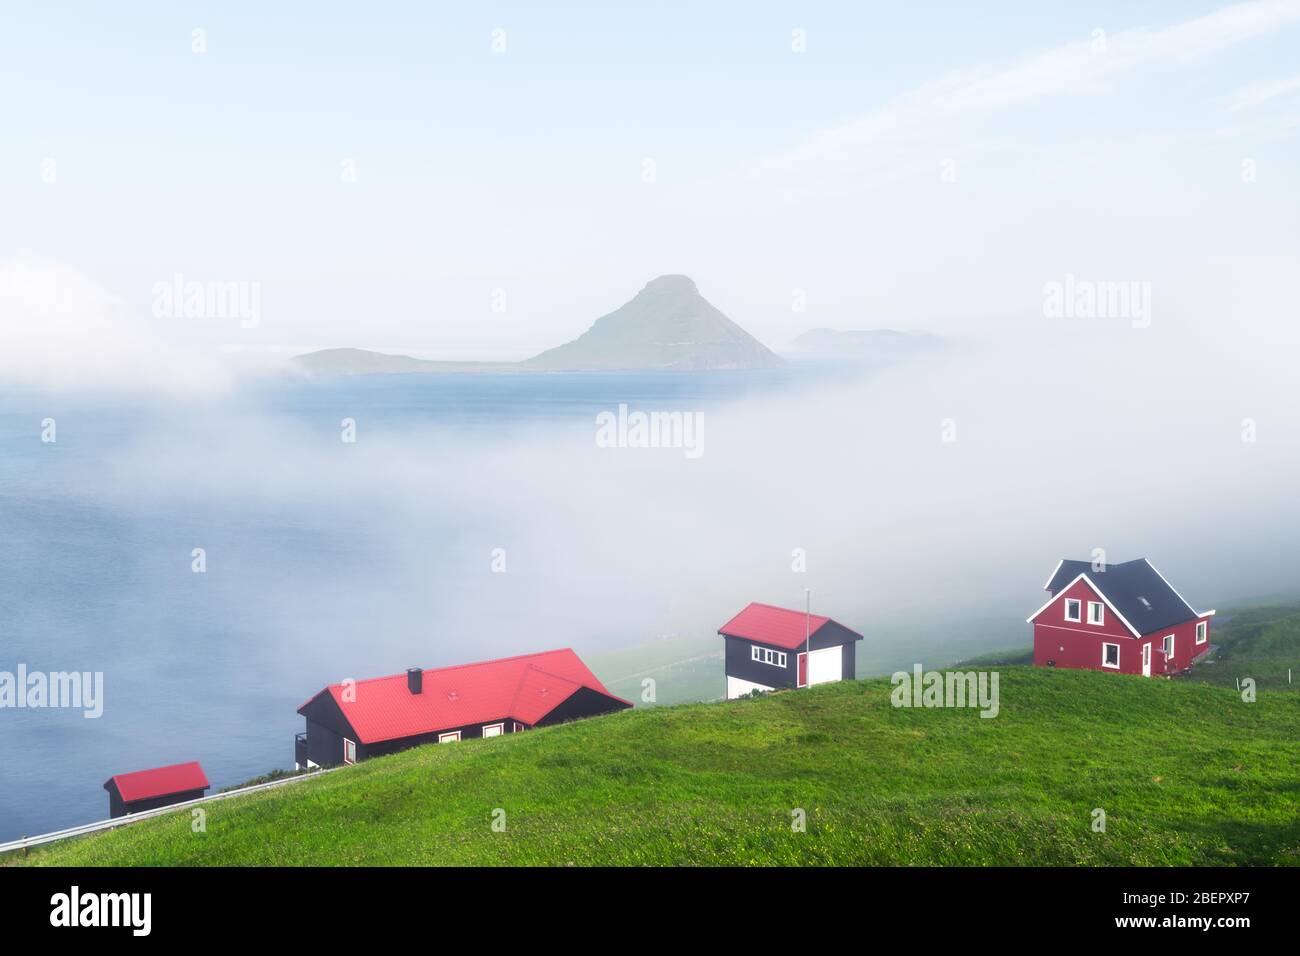 Neblige Morgenansicht eines Hauses mit rotem Dach im Dorf Velbastadur auf der Insel Streymoy, Färöer, Dänemark. Landschaftsfotografie Stockfoto